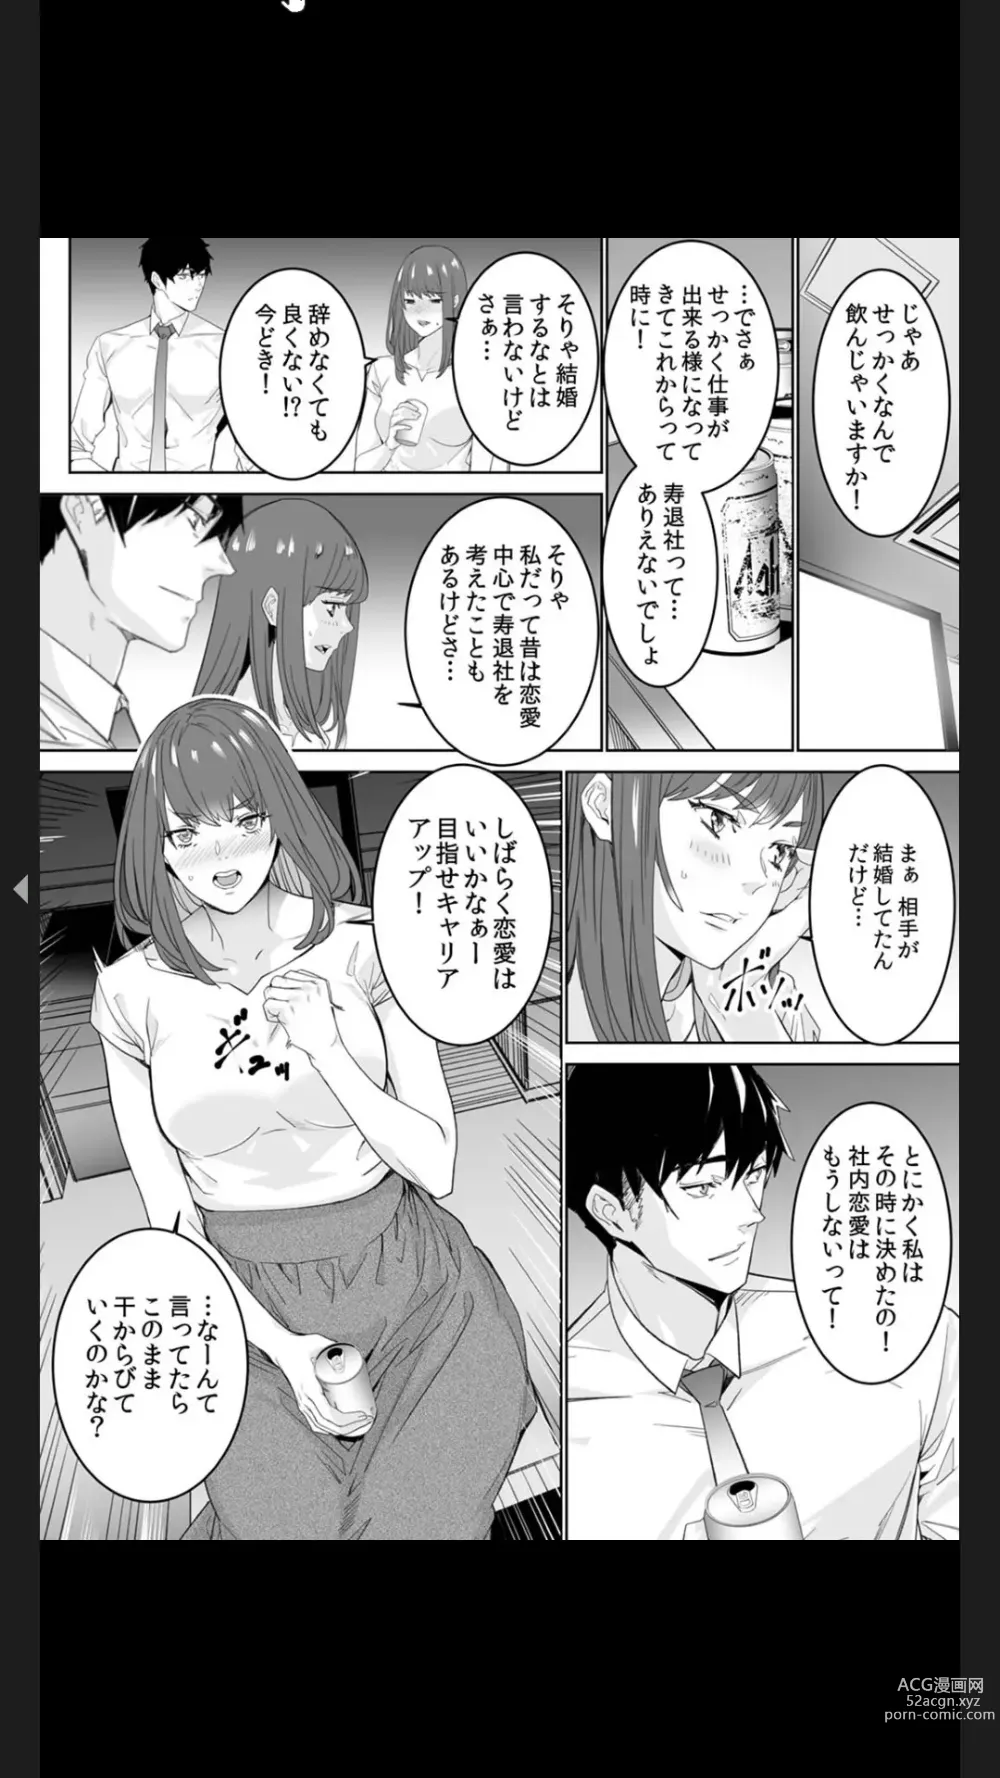 Page 8 of manga Koitsu no SEX, Do-S Sugi...!